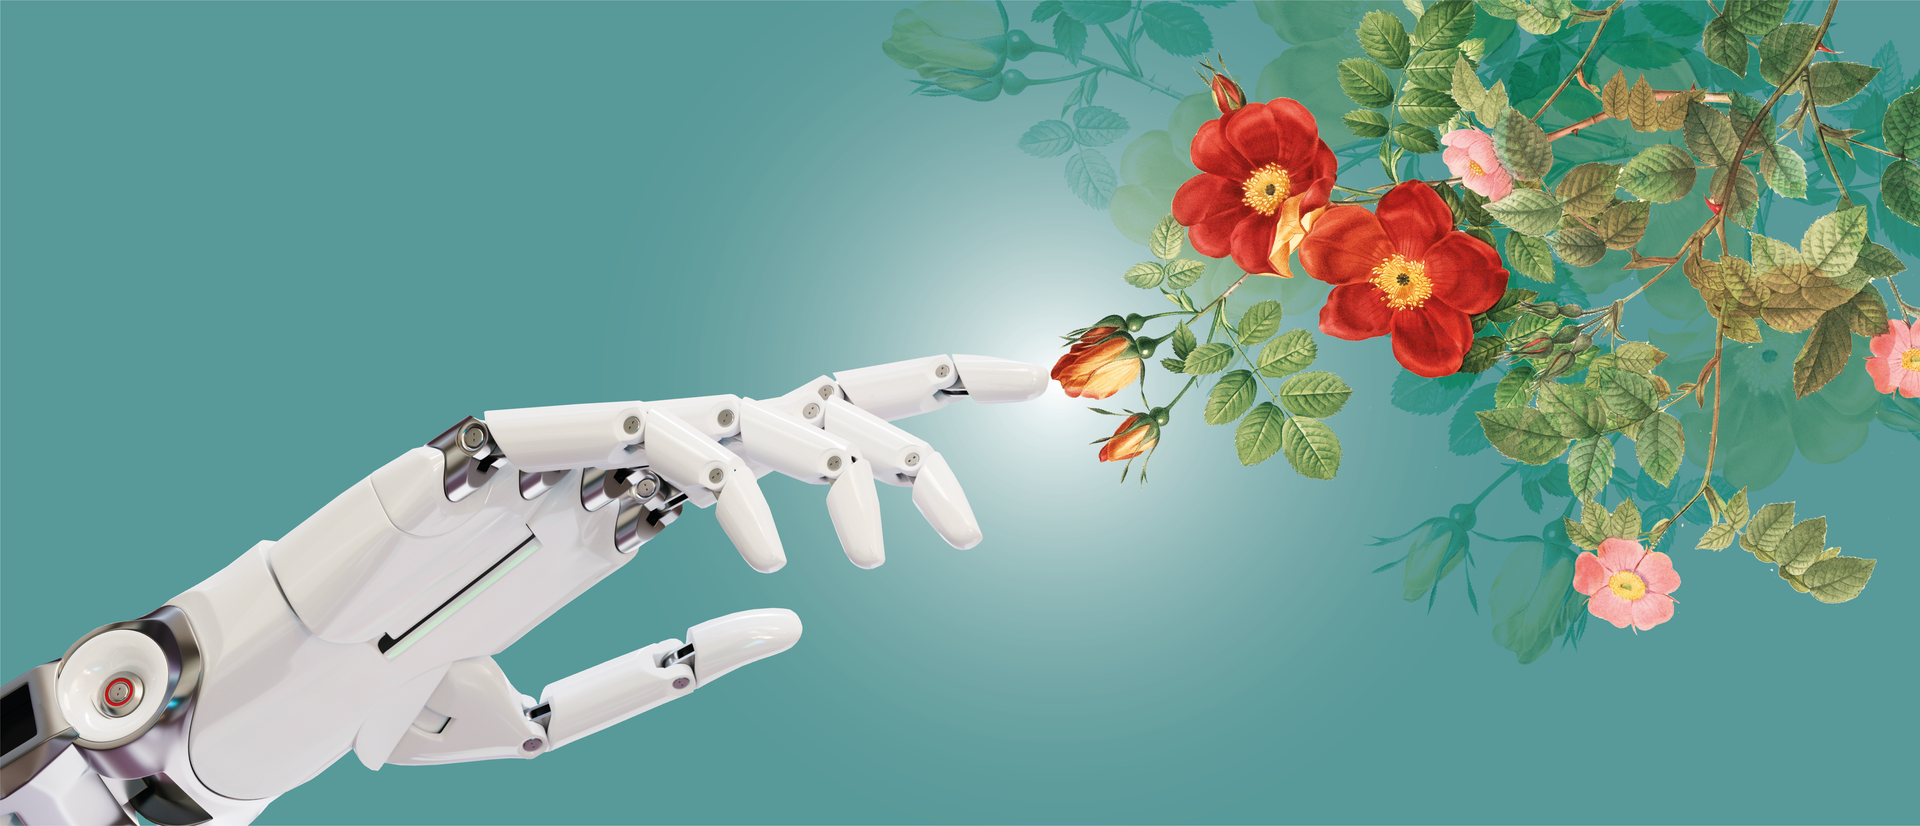 Grafika przedstawia rękę robota wyciągniętą w kierunku czerwonego kwiatu./A robotic hand extended towards a red flower.